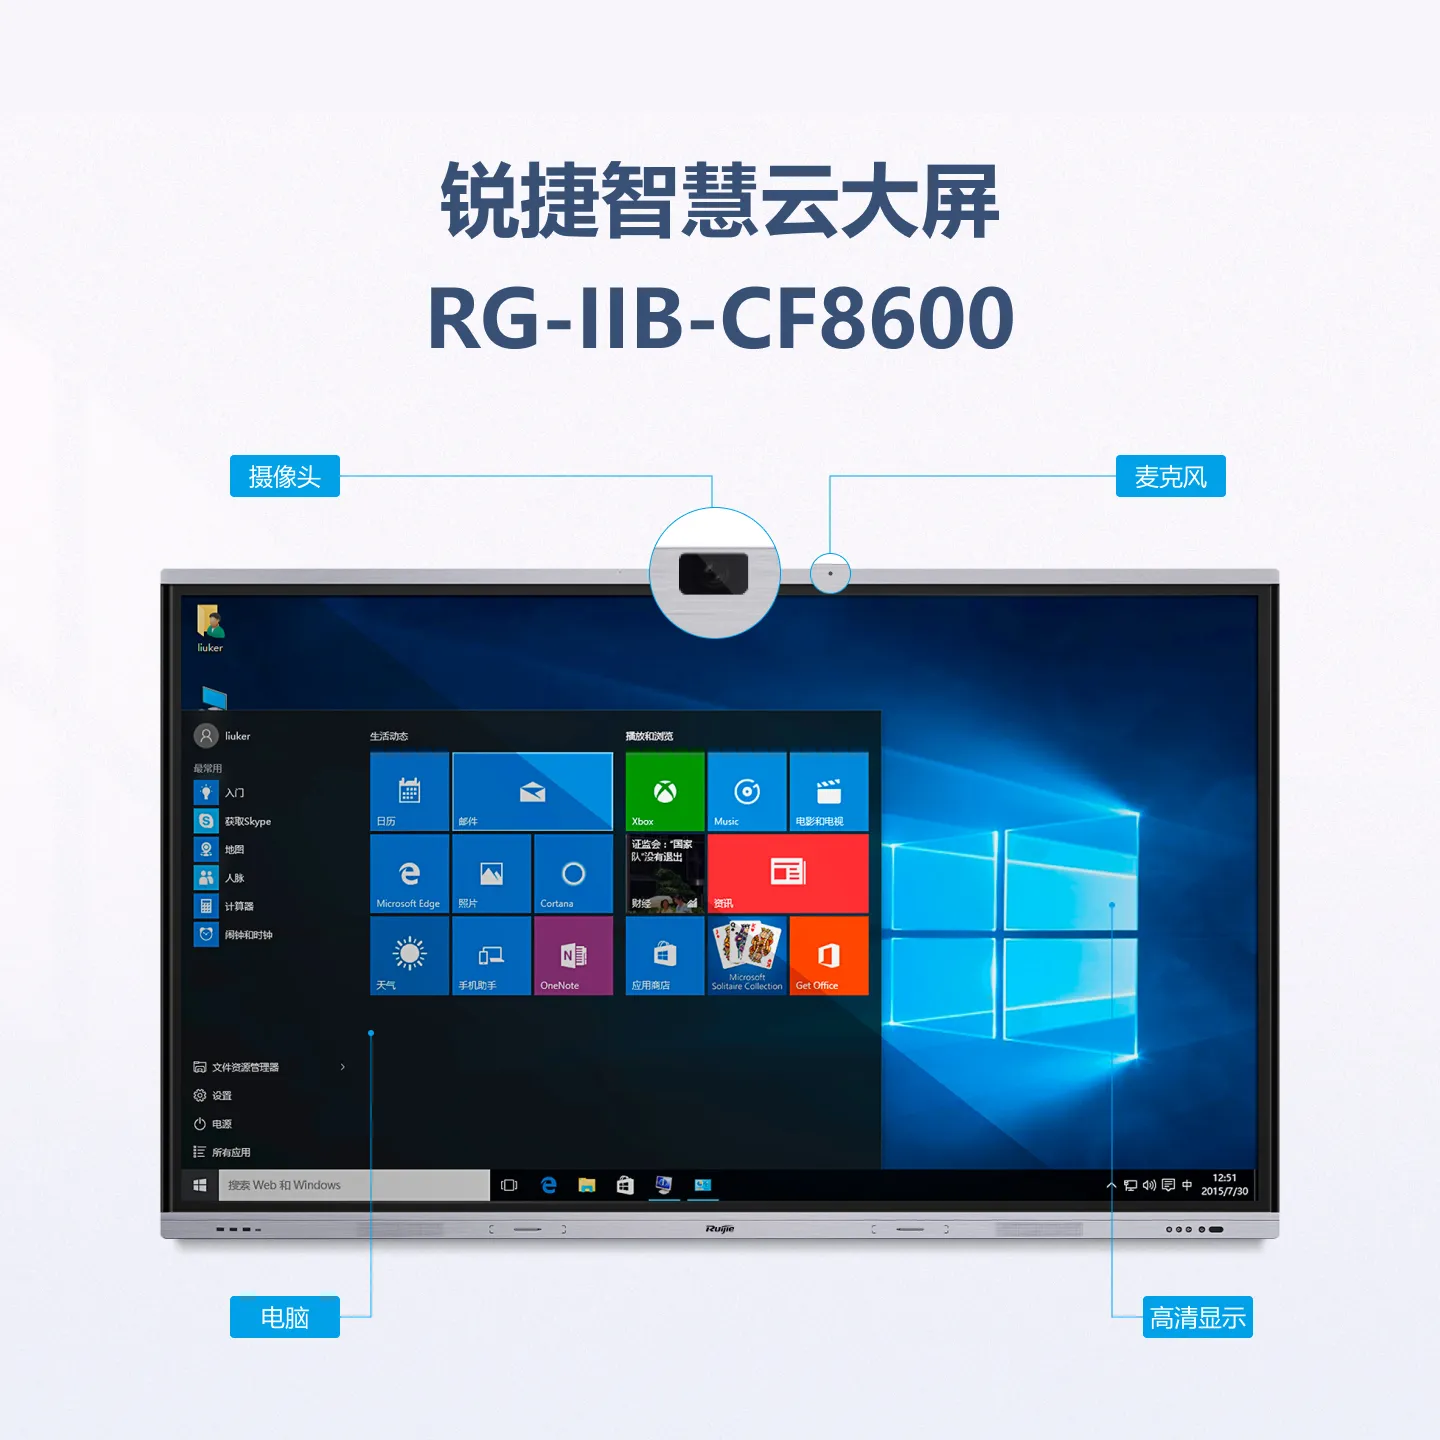 RG-IIB-CF8600